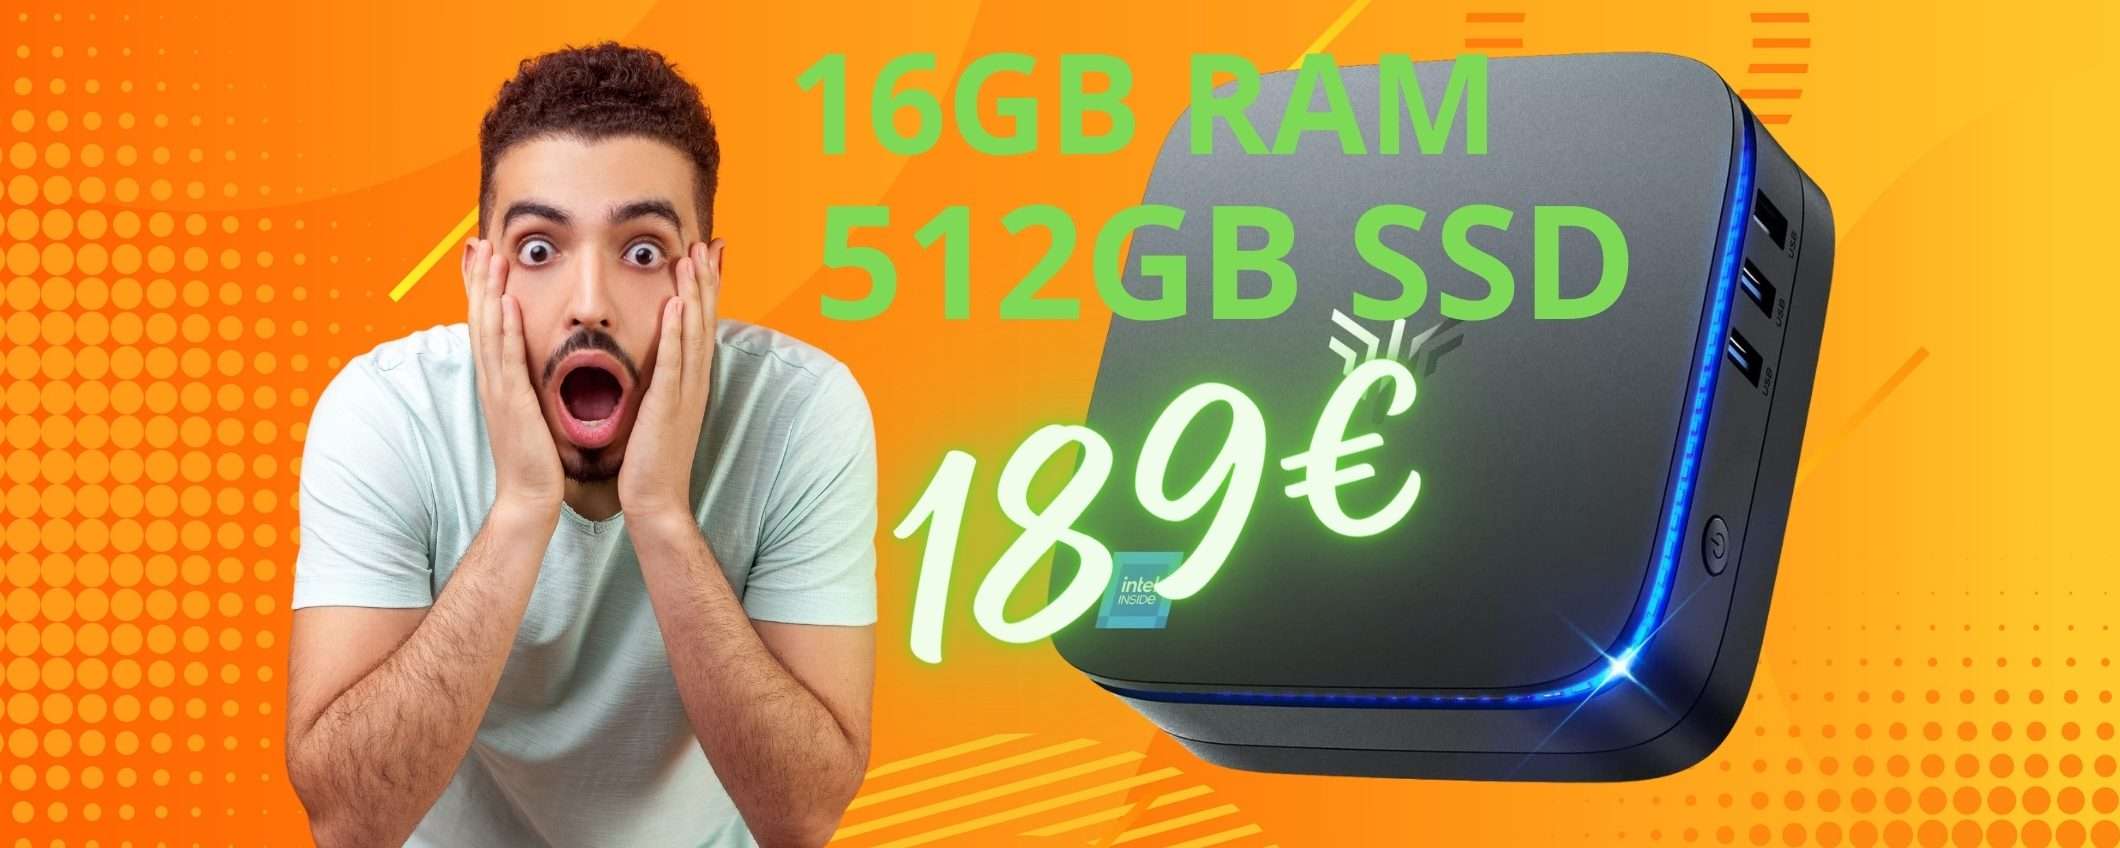 Piccolo computer POTENTE a prezzo ridicolo: 16GB RAM e 512GB SSD